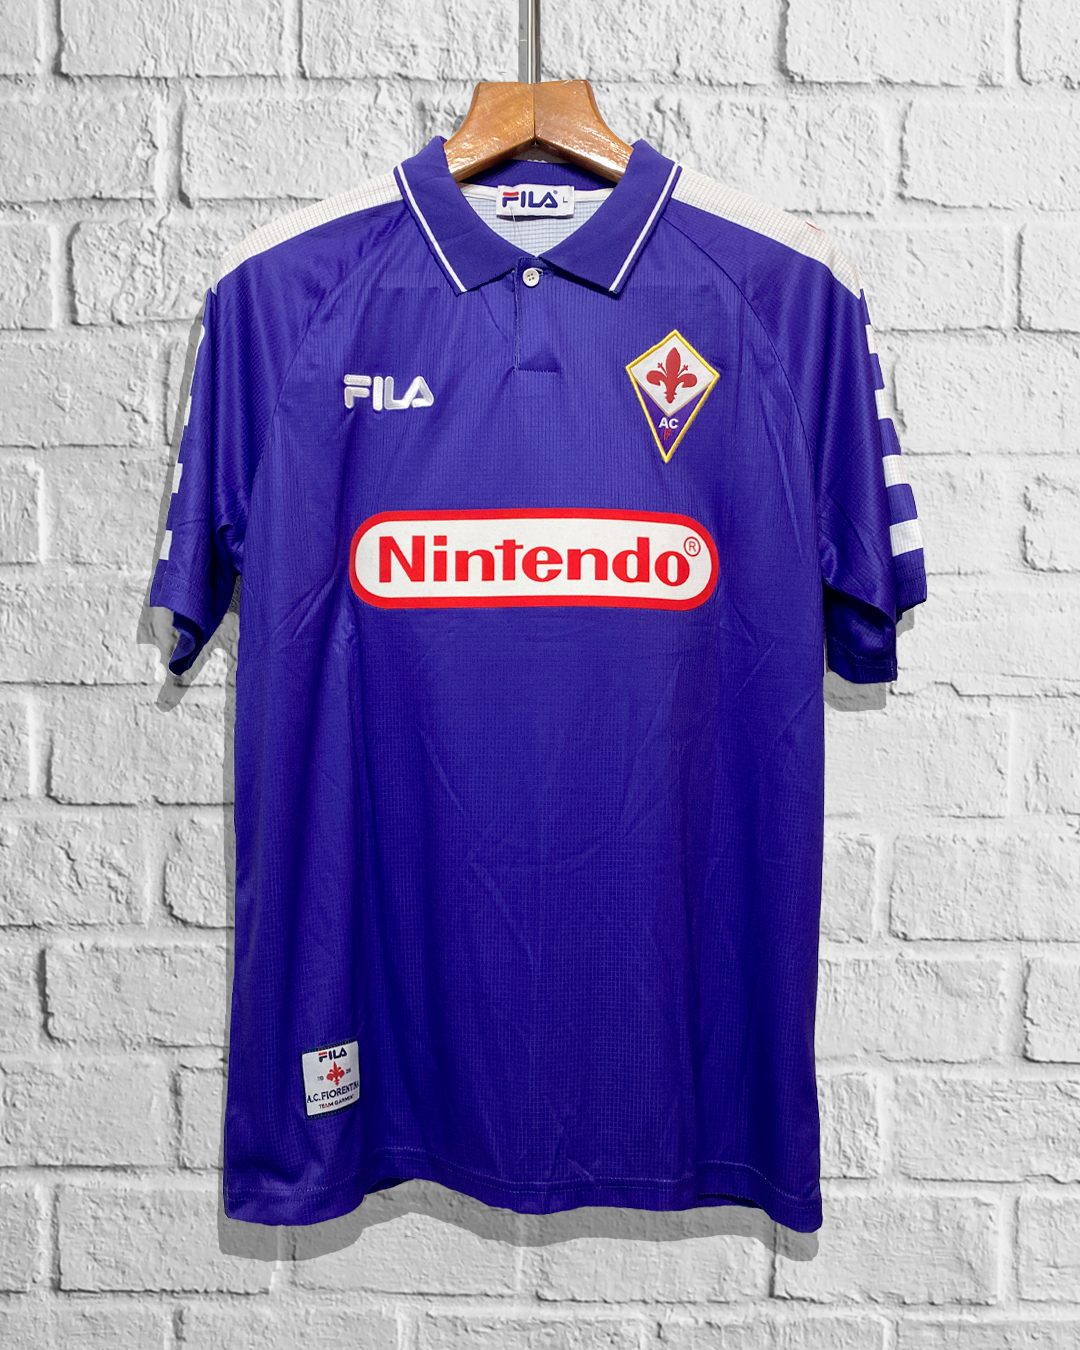 Jersey Retro Fiorentina 1998 1999 Local Batistuta